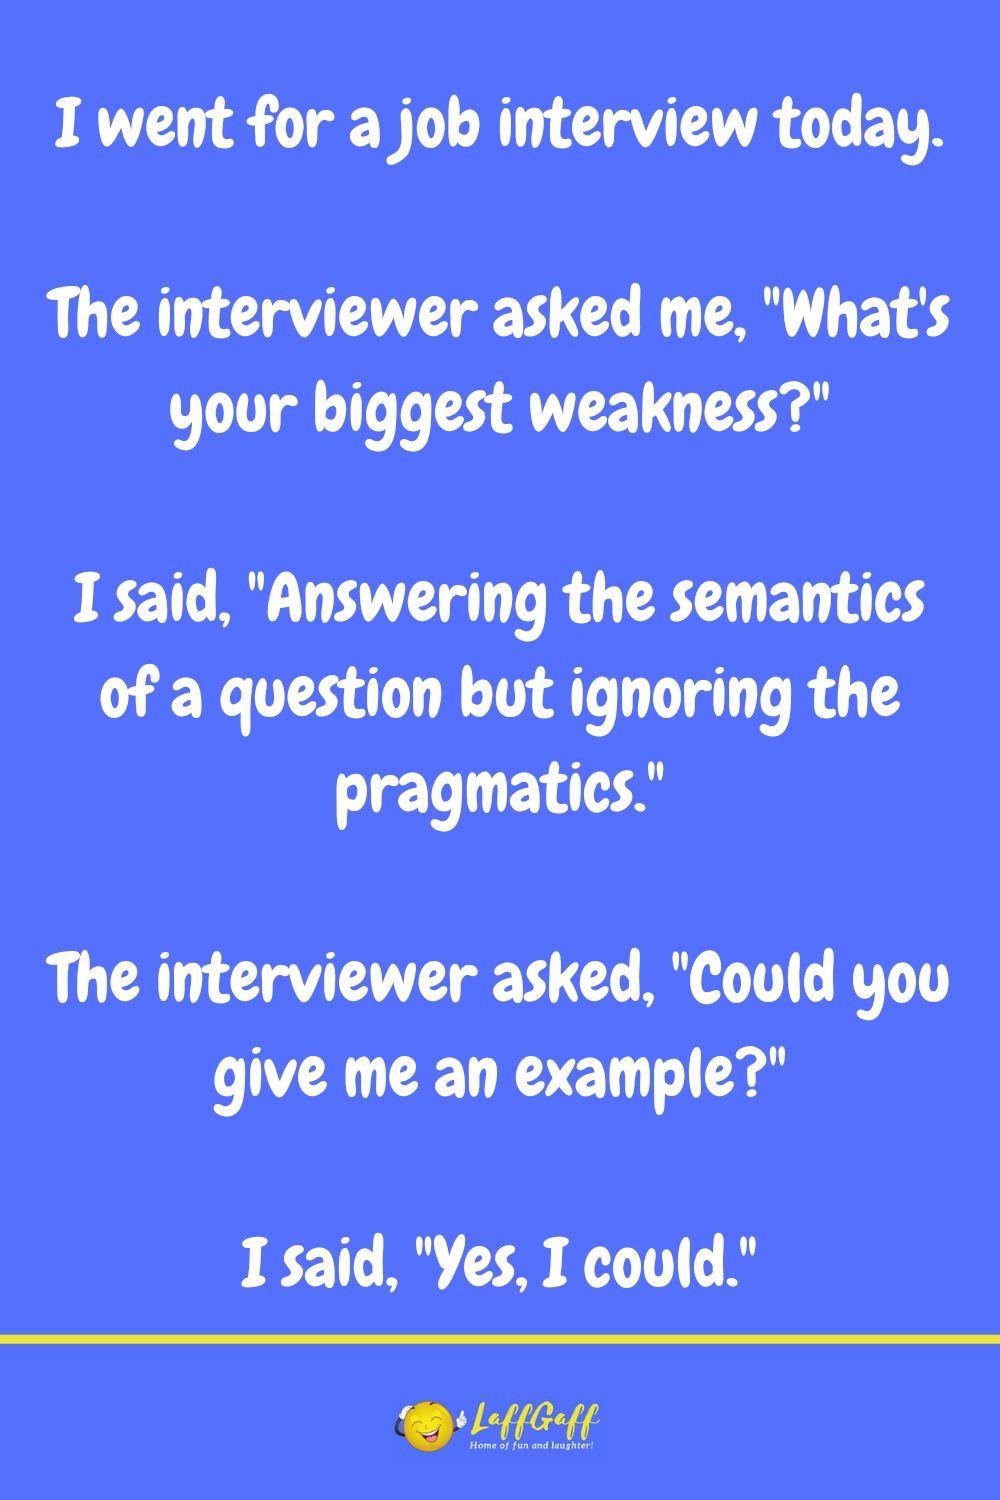 Biggest weakness interview question joke from LaffGaff.